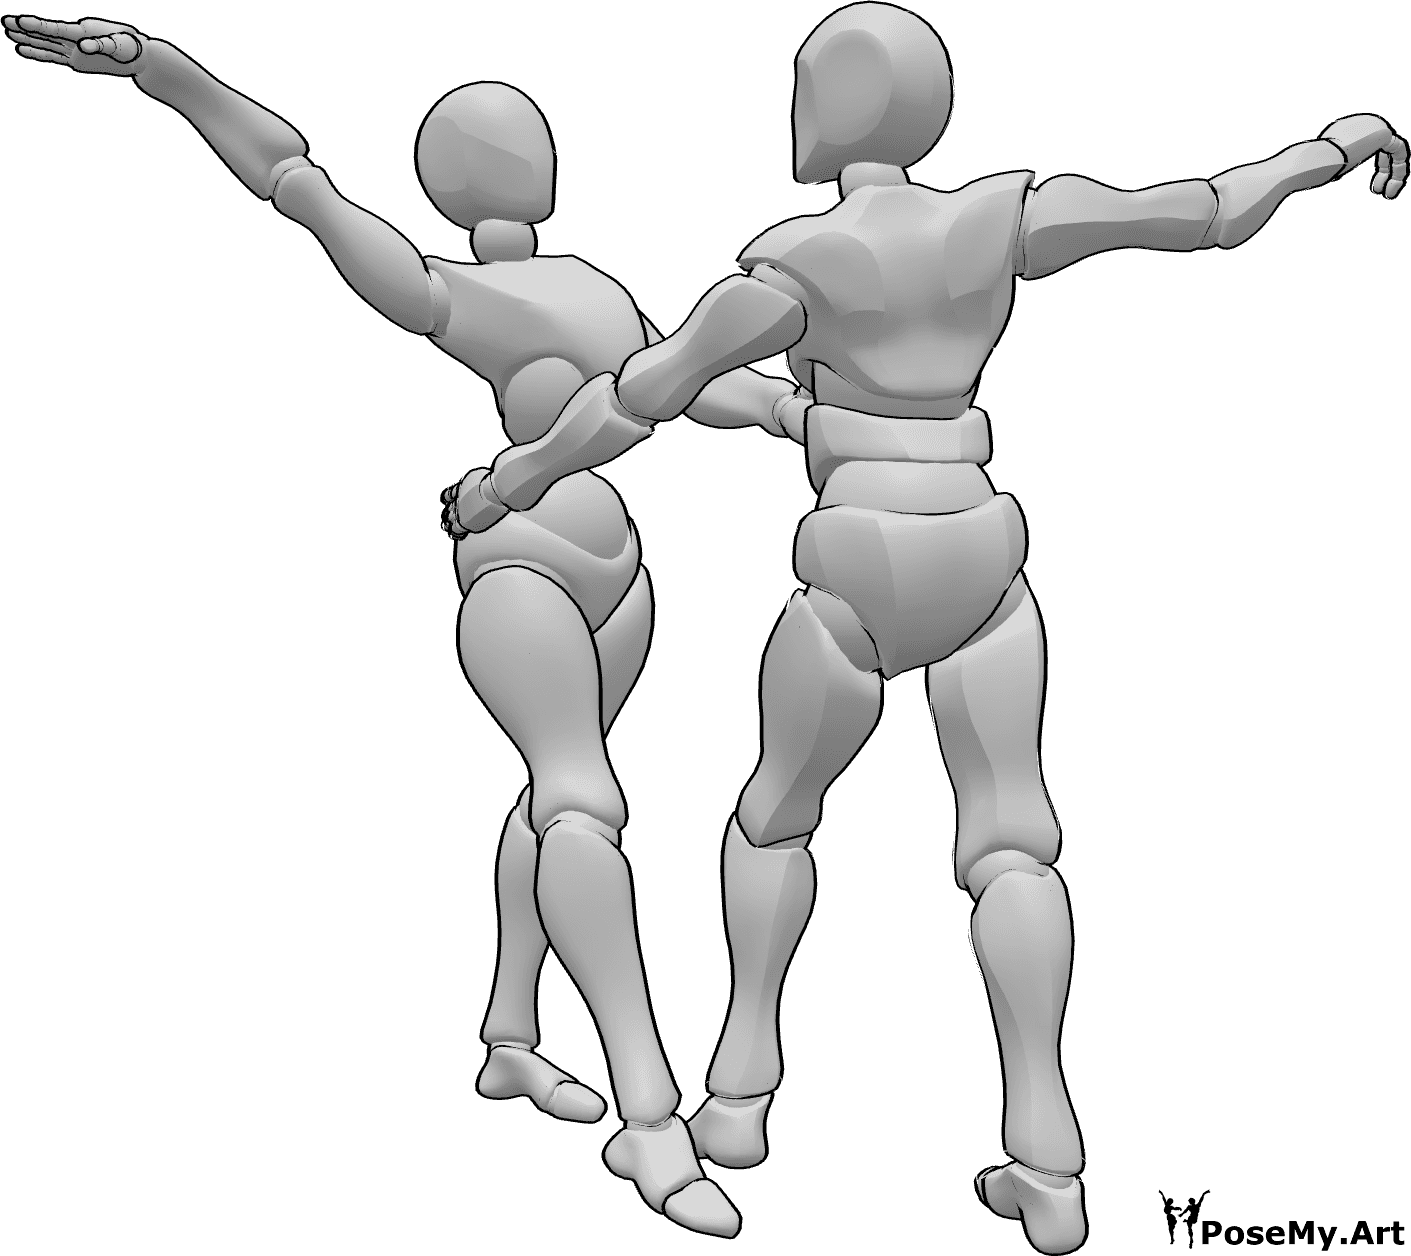 Posen-Referenz- Tanzende Duo-Pose - Weiblich und männlich tanzen zusammen Pose